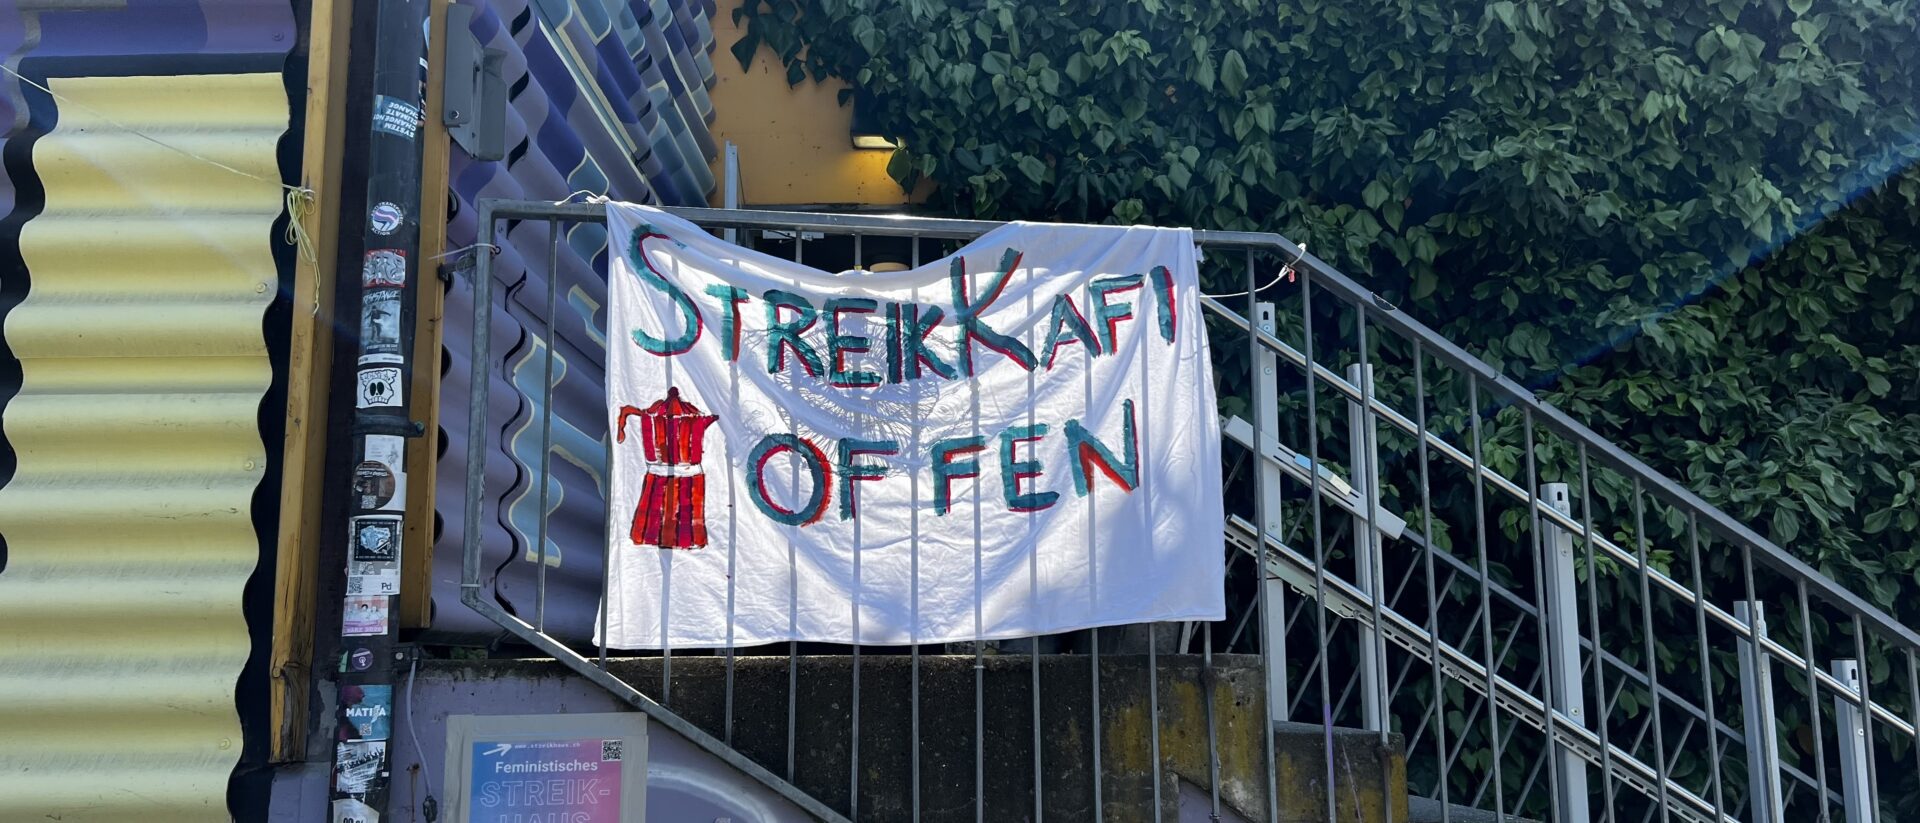 Im Streikhaus am Sihlquai in Zürich gibt es ein Sreik-Kafi.